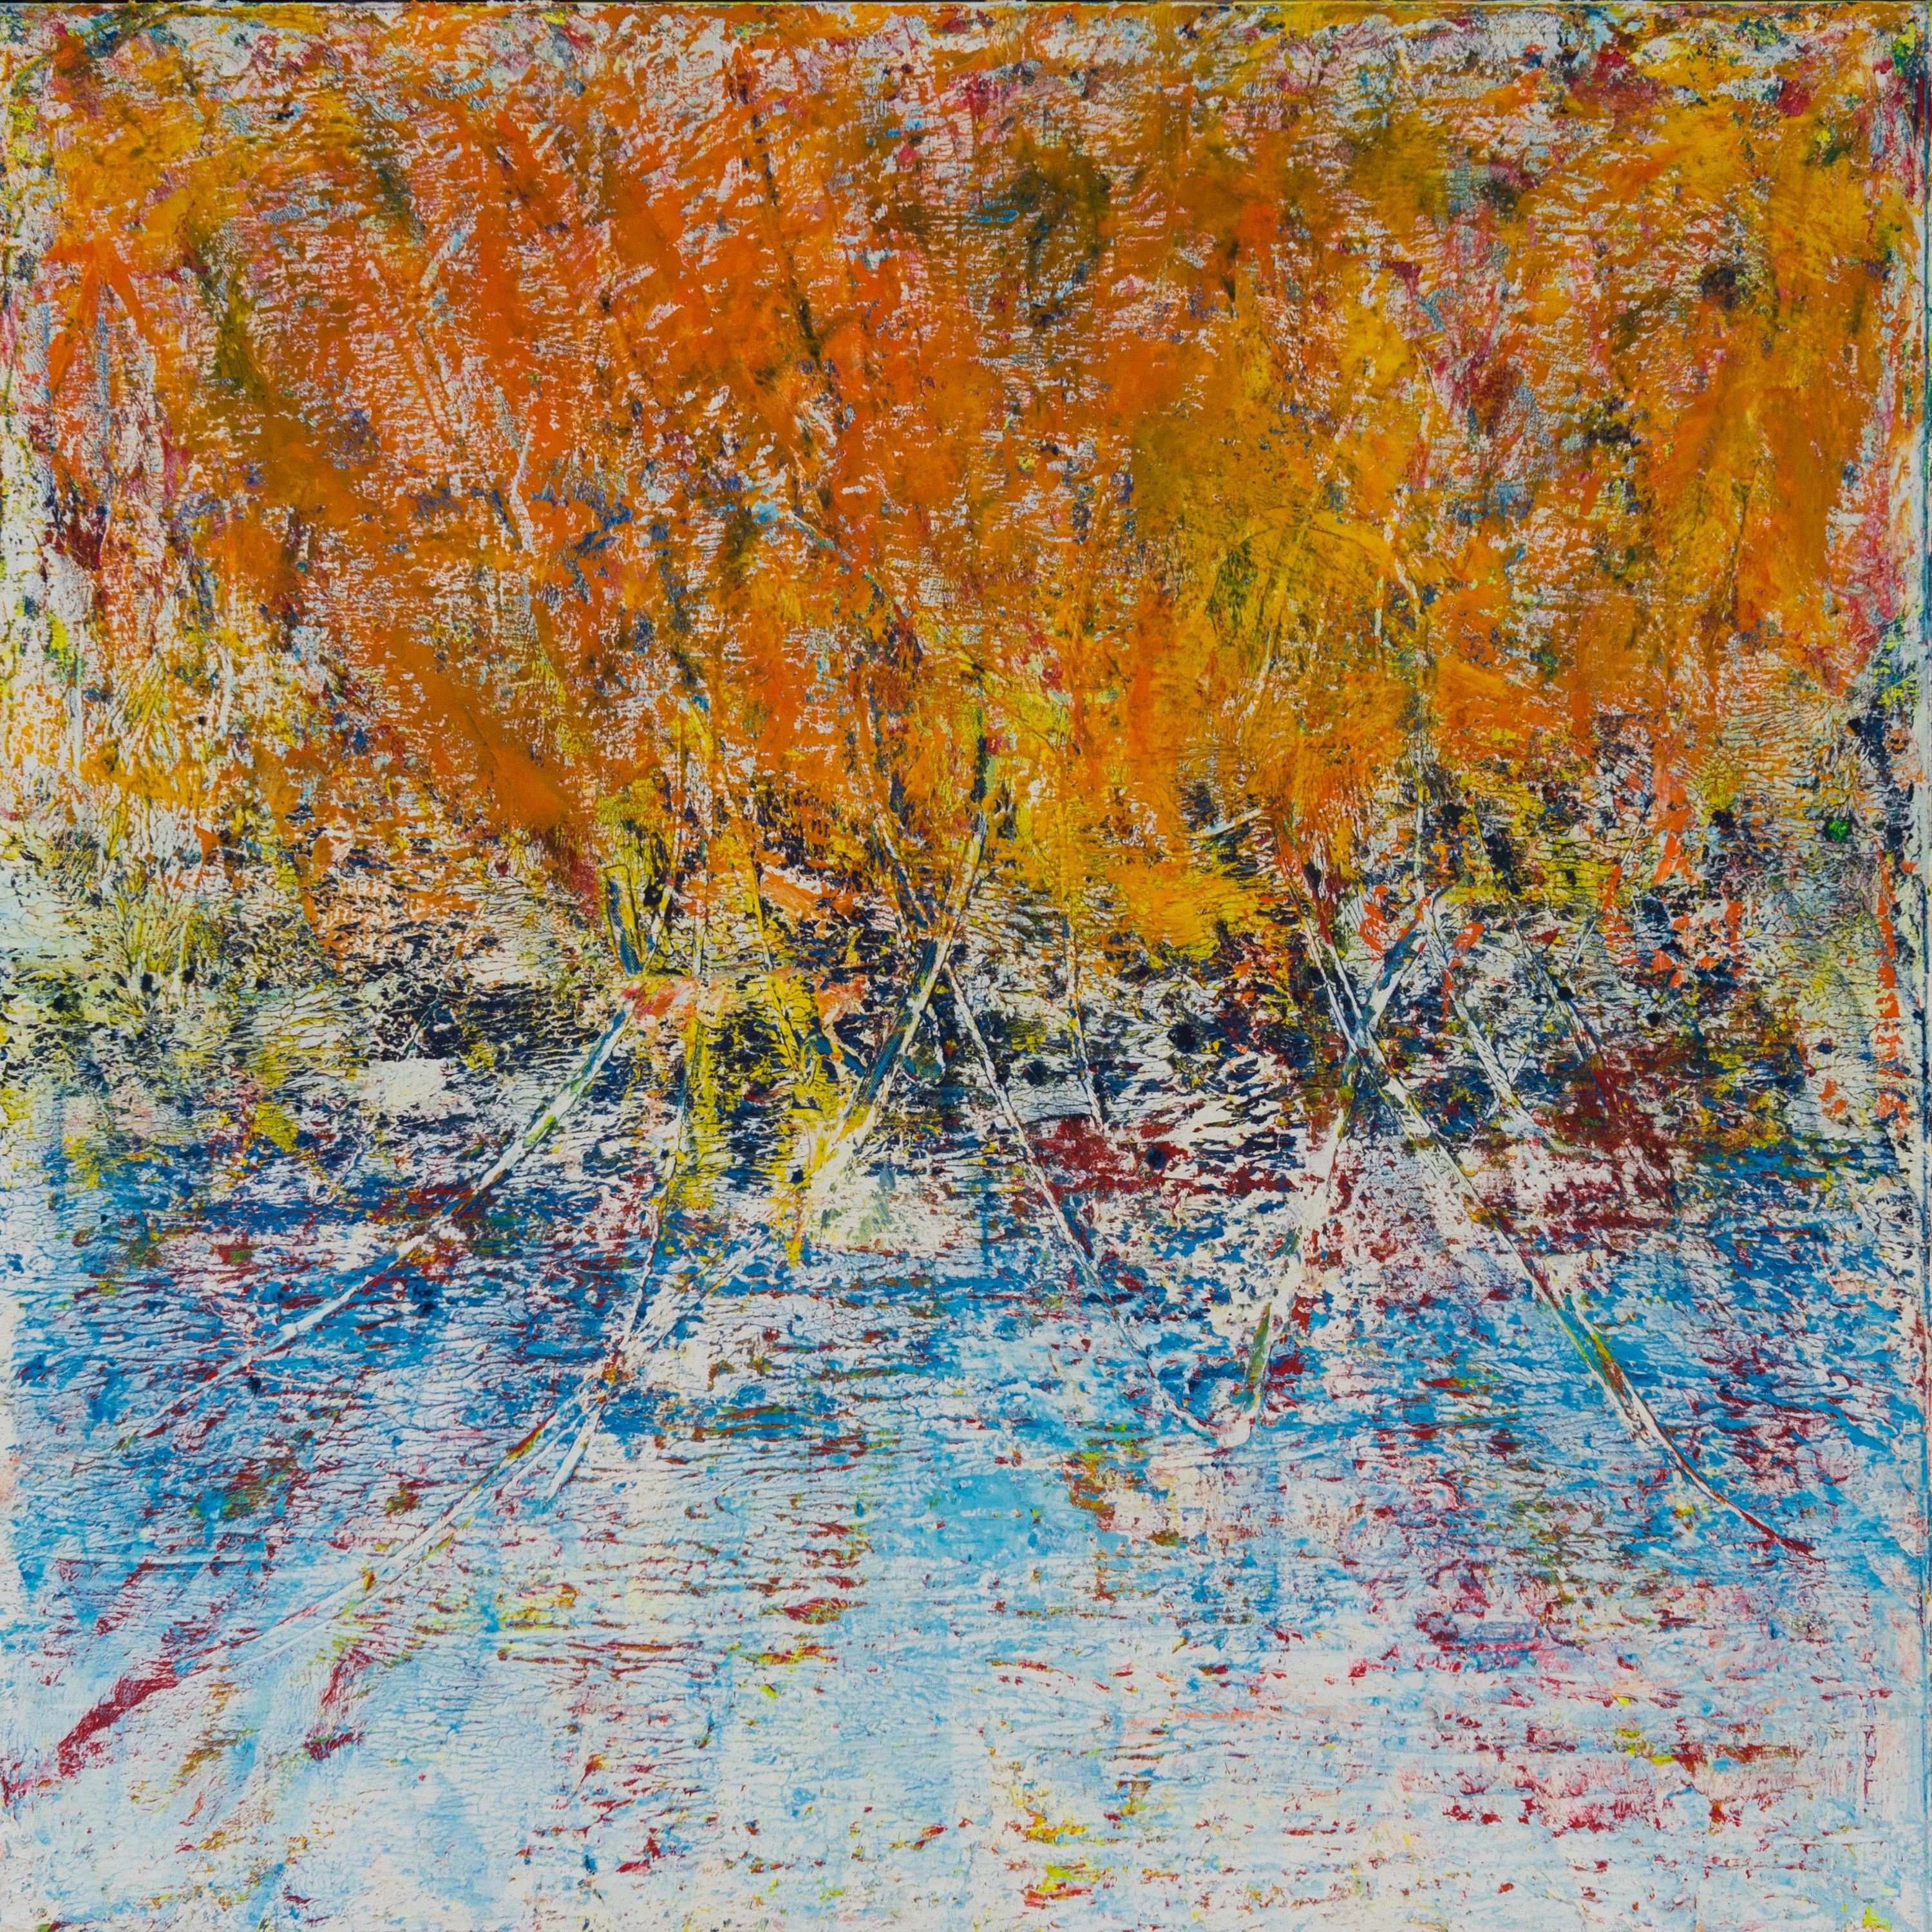 Abstraktes Gemälde „Orange Sky“ von Ahmed Farid, 39" x 39" Zoll

Mischtechnik auf Leinwand

Farid wurde 1950 in Kairo, Ägypten, geboren, wo er heute lebt und arbeitet. Er ist ein autodidaktischer ägyptischer Maler, der eine private Ausbildung in den